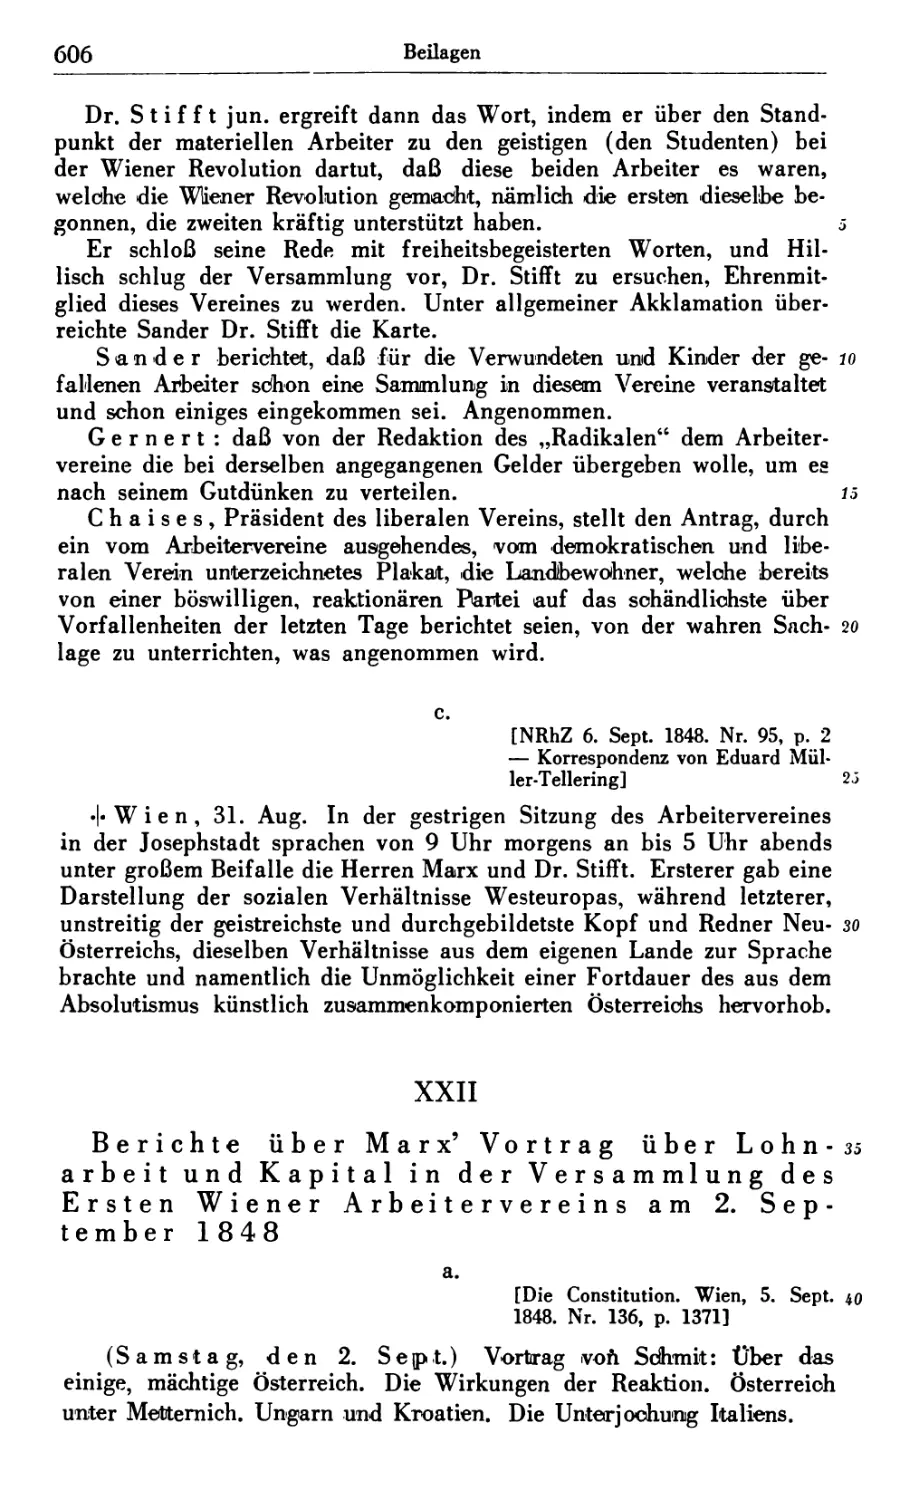 XXII. Berichte über Marx’ Vortrag über Lohnarbeit und Kapital in der Versammlung des Ersten Wiener Arbeitervereins am 2. September 1848